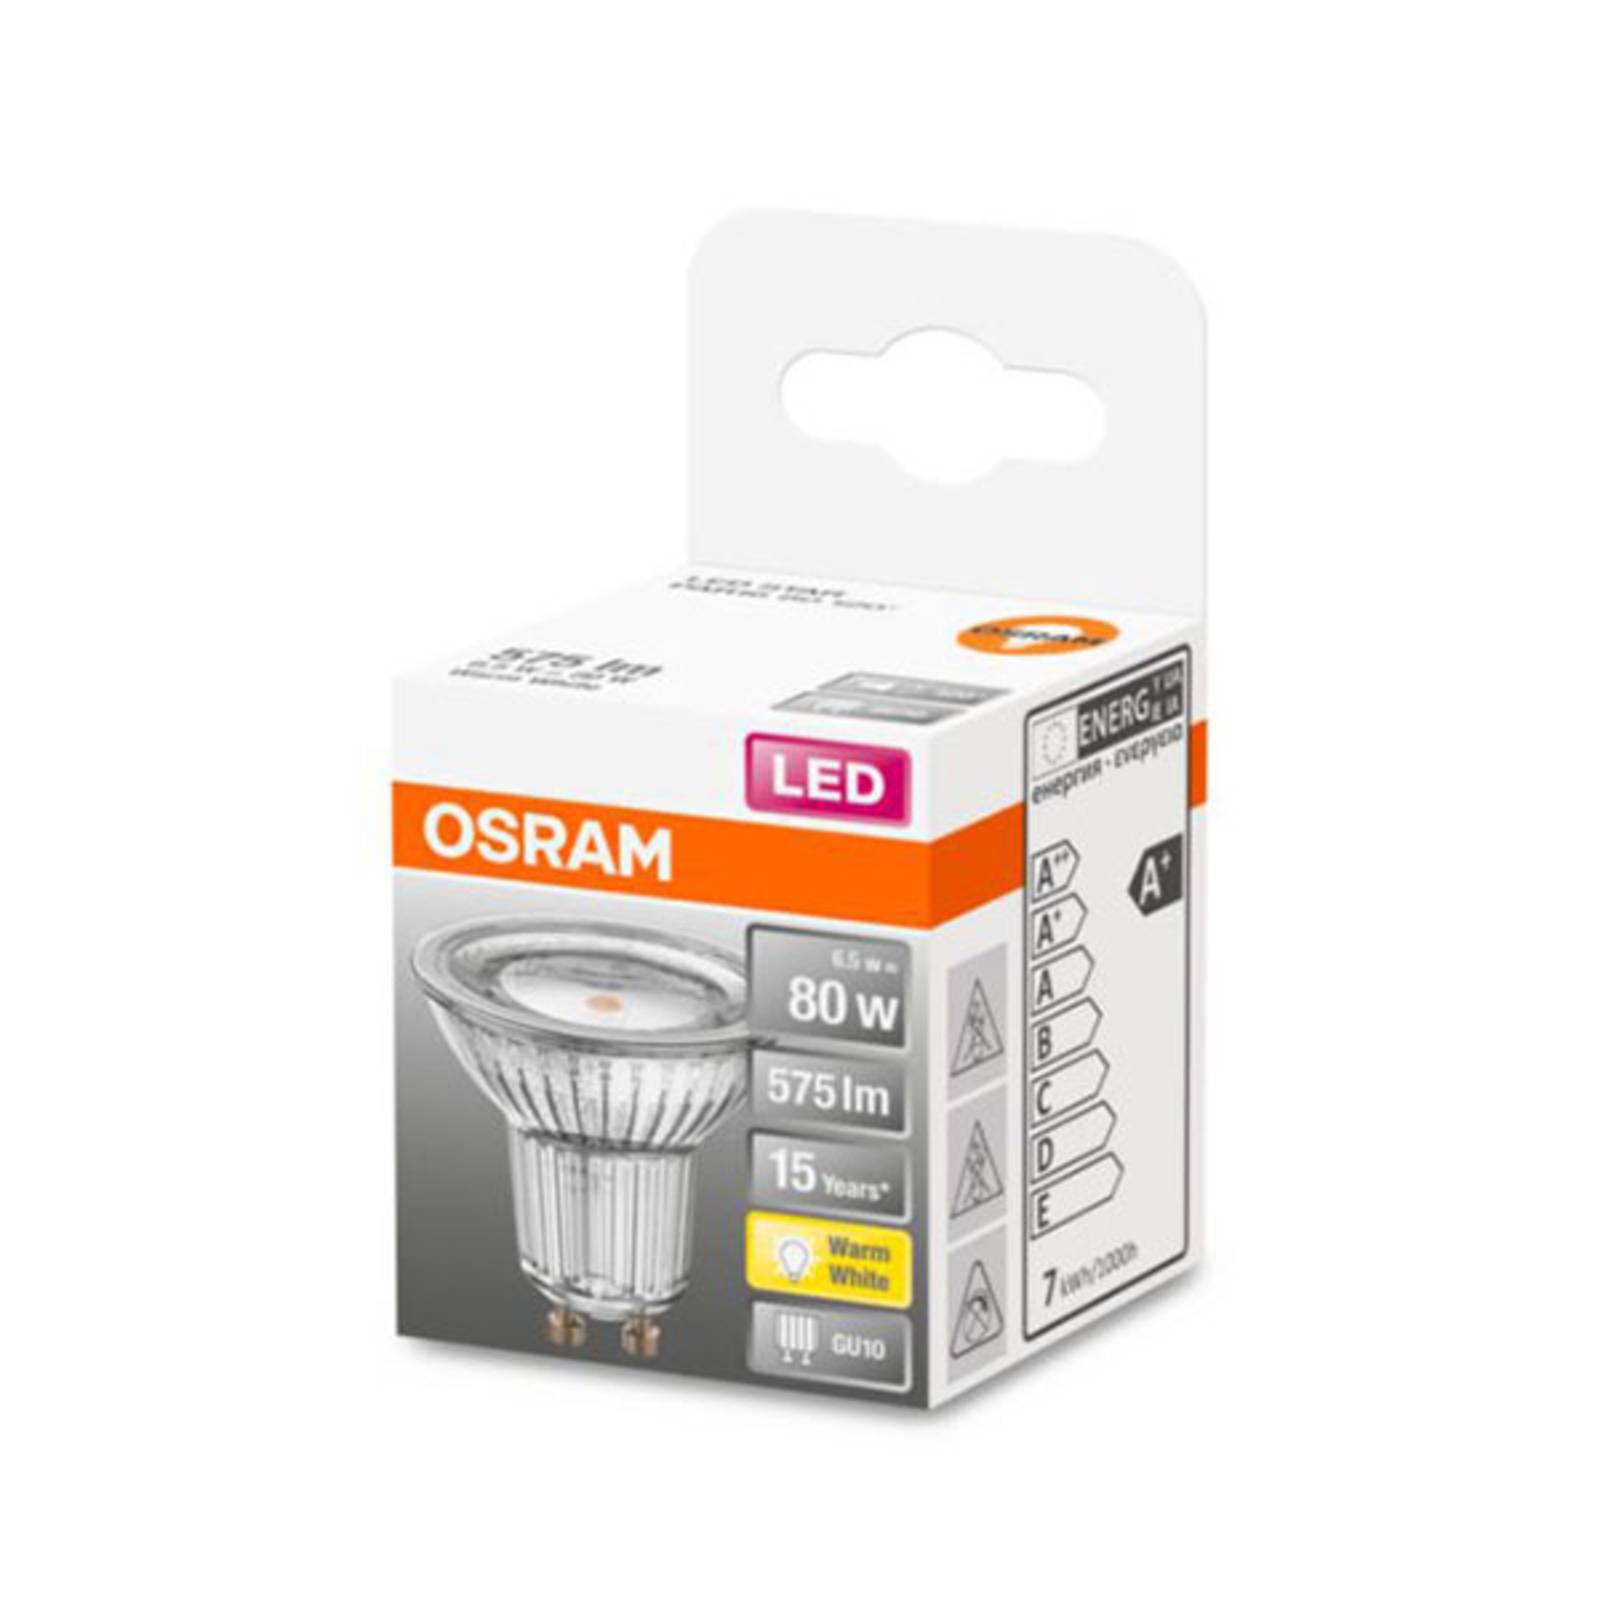 OSRAM LED reflektor GU10 6,9W meleg fehér 120°